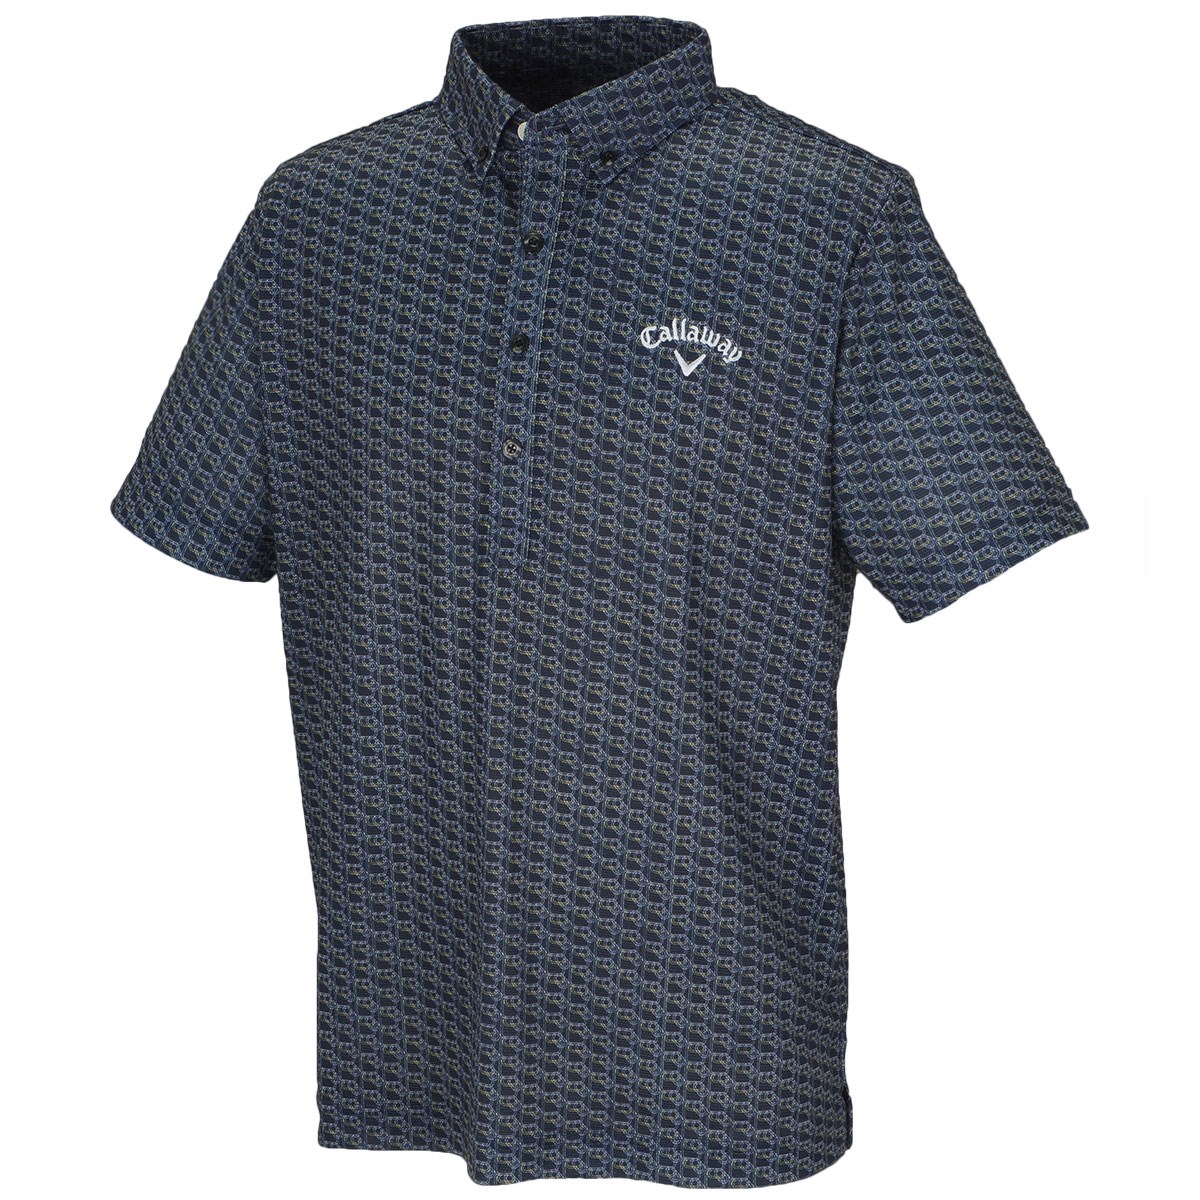 キャロウェイゴルフ(Callaway Golf) 滑走路プリント ボタンダウンボックス半袖ポロシャツ 